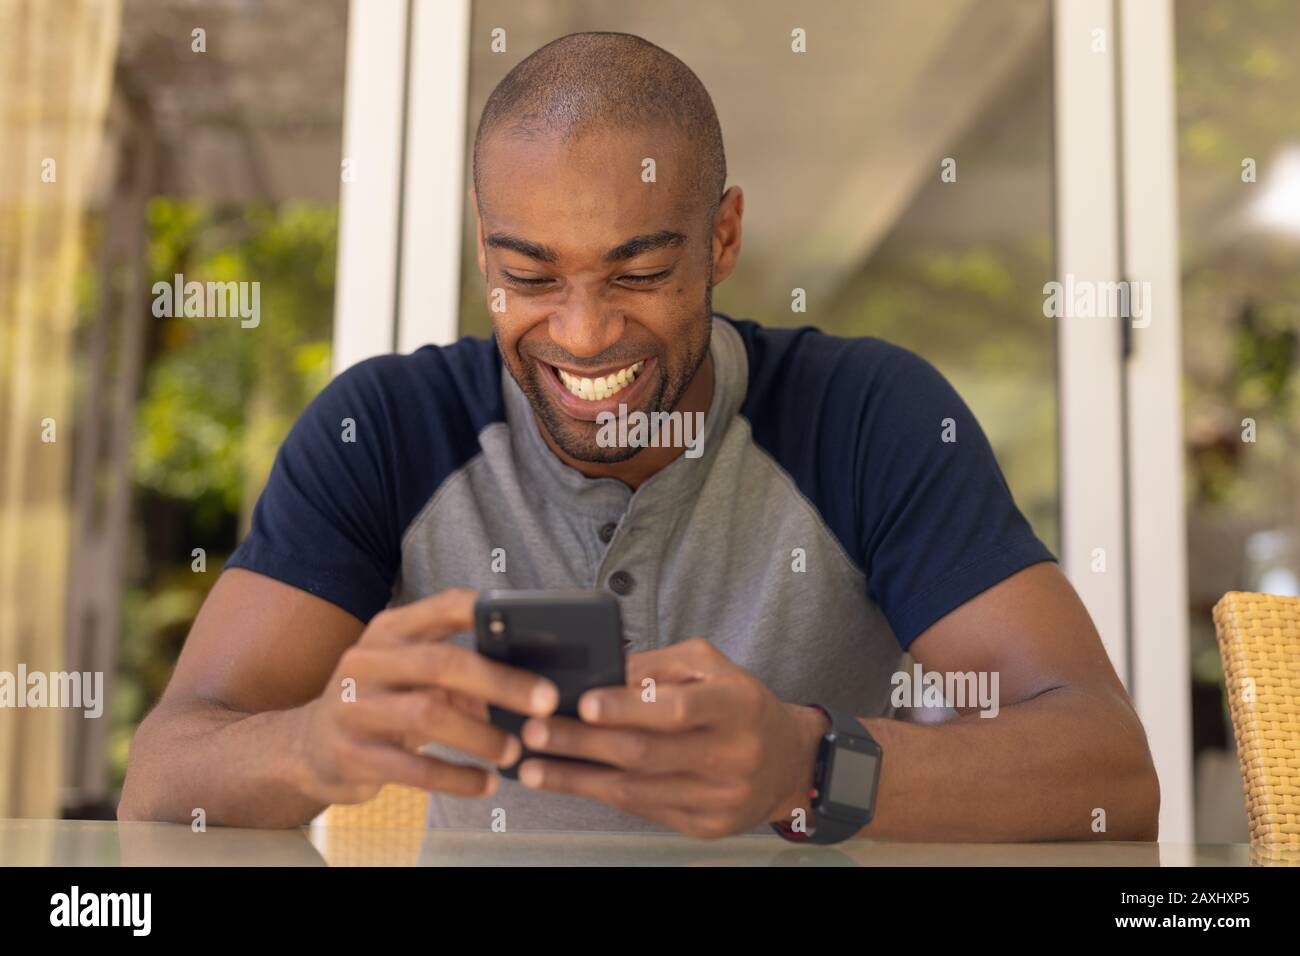 Vorderansicht Nahaufnahme eines afroamerikanischen Mannes mit grauem T-Shirt auf der Terrasse, mit seinem Handy und lächelnd Stockfoto